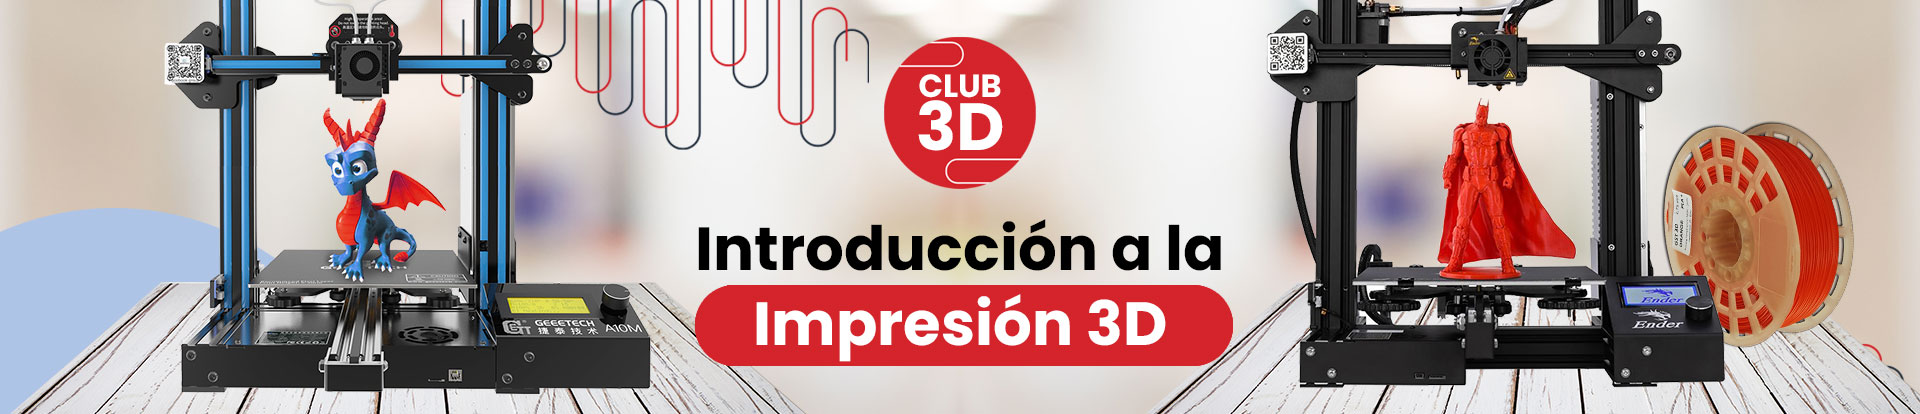 Web-Banner-Club-3D-2